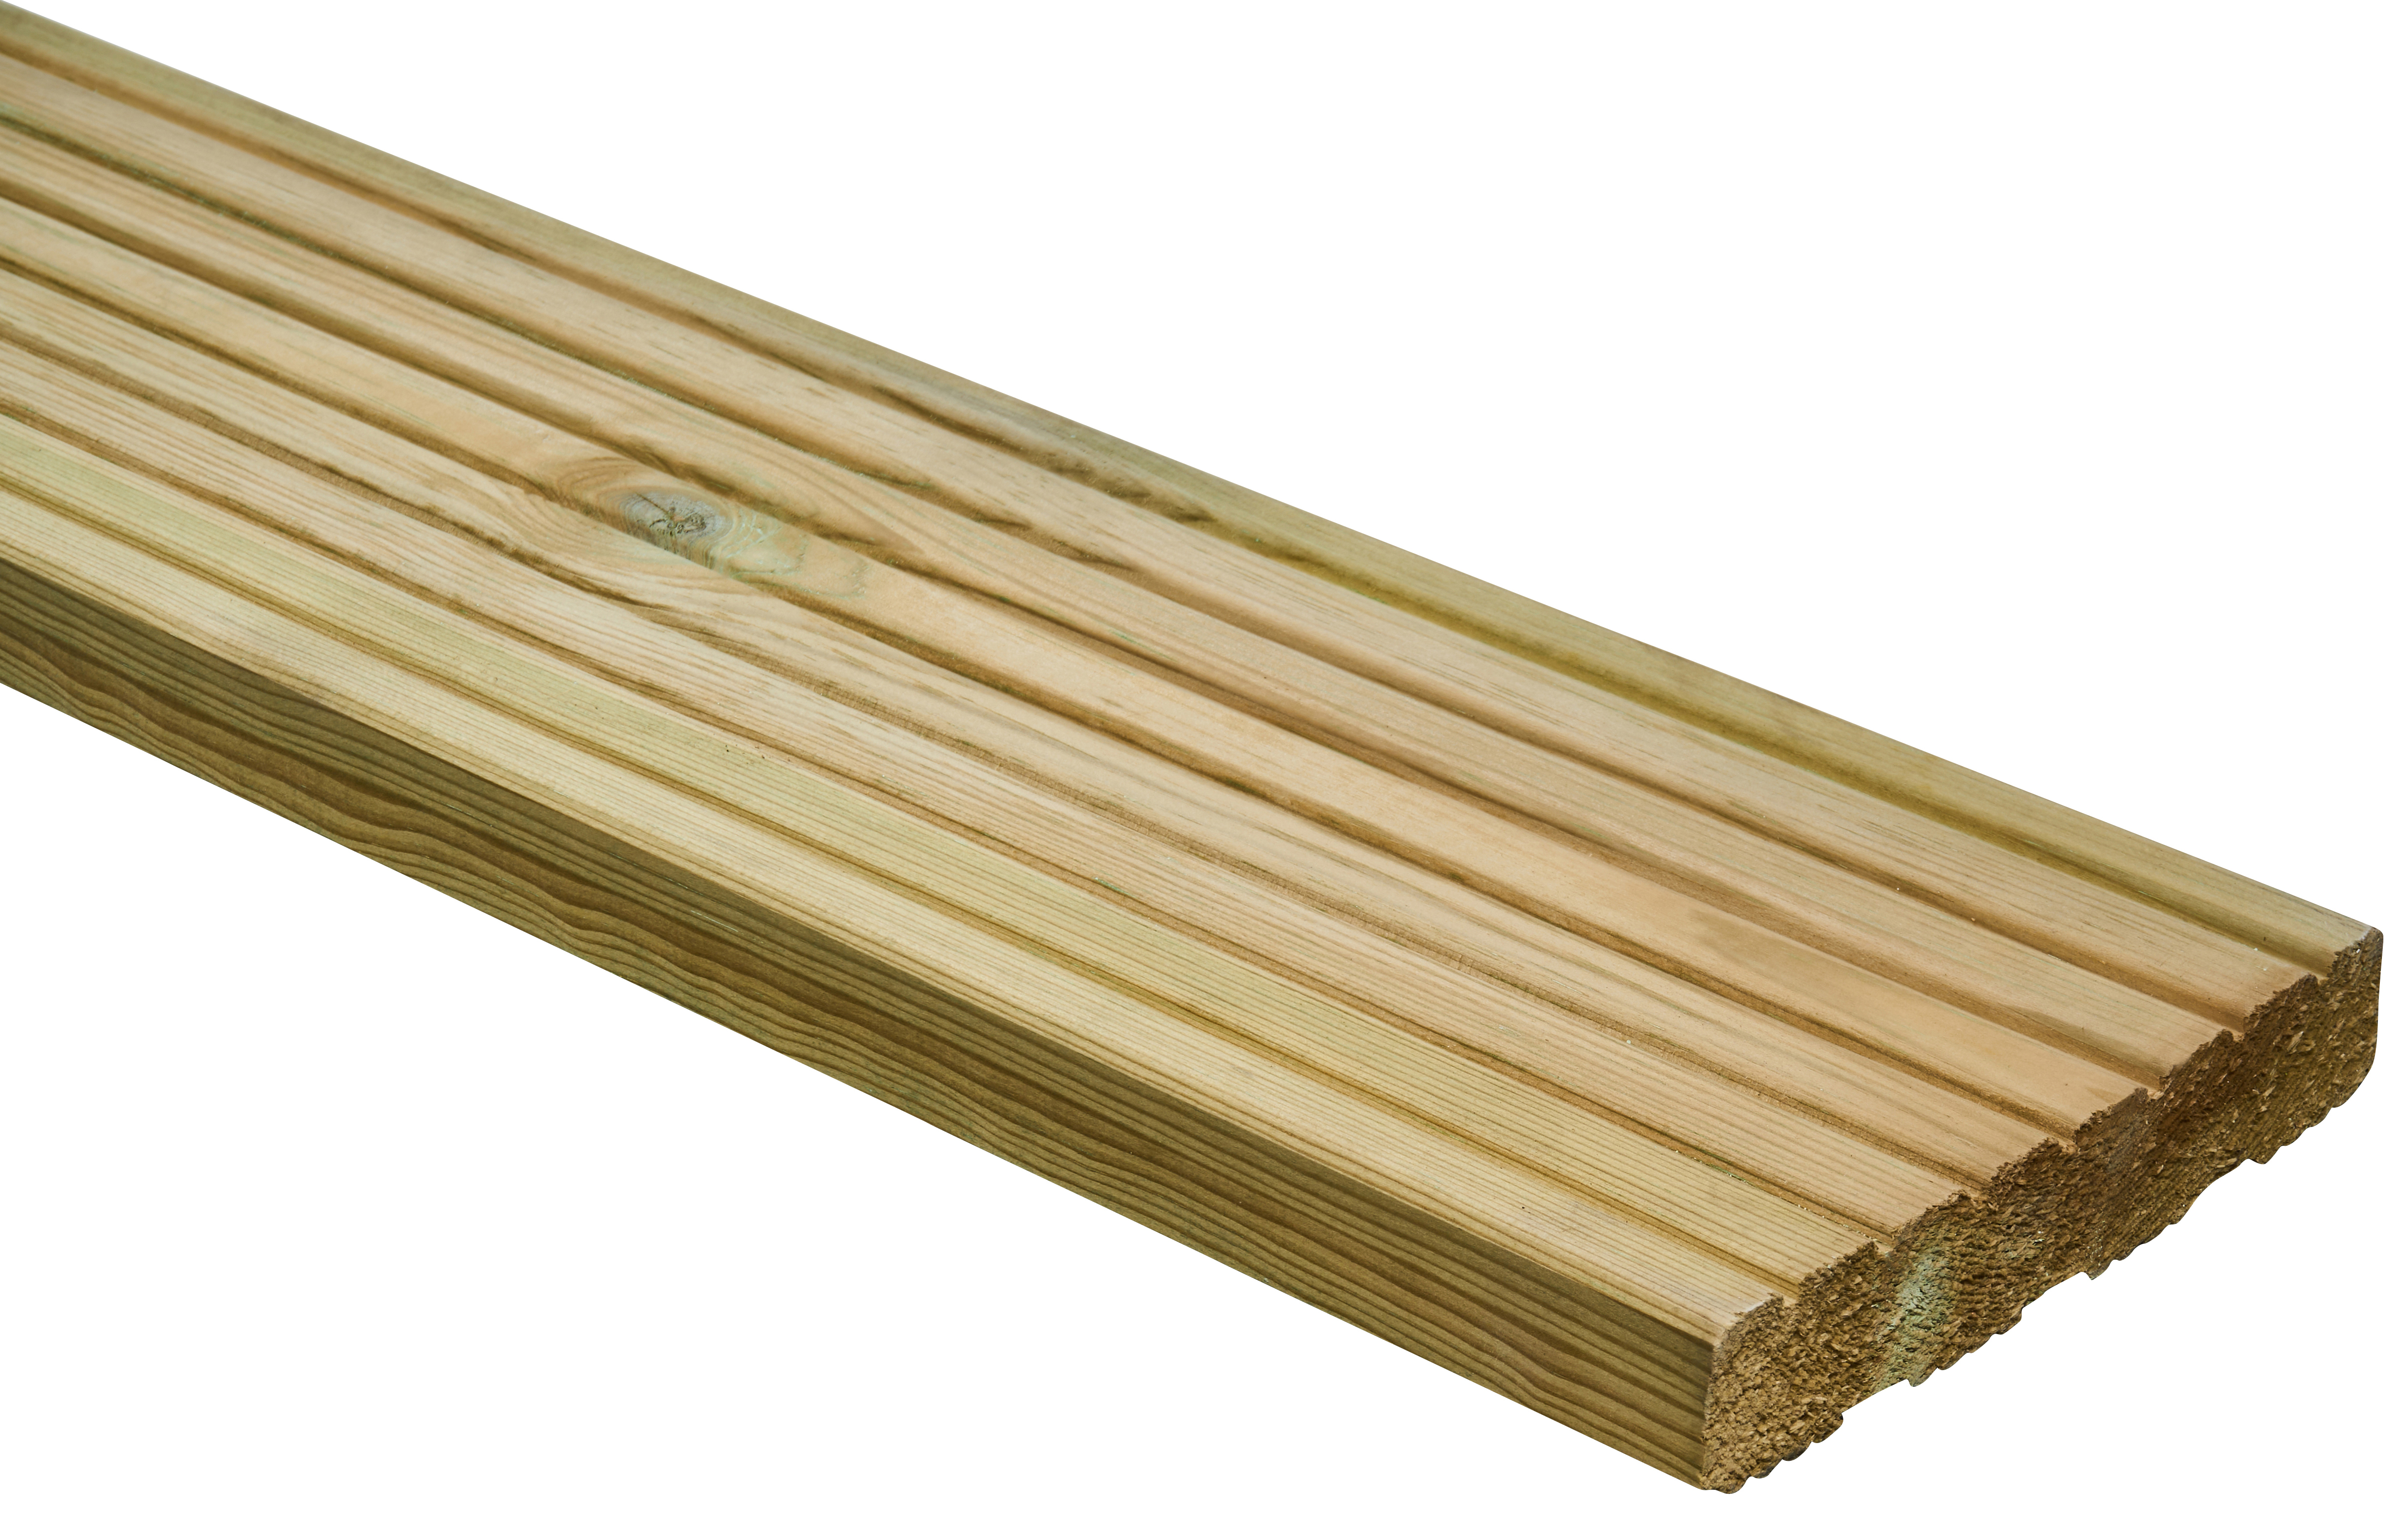 Wickes Pro Timber Deck Board - 27 x 144 x 4800mm